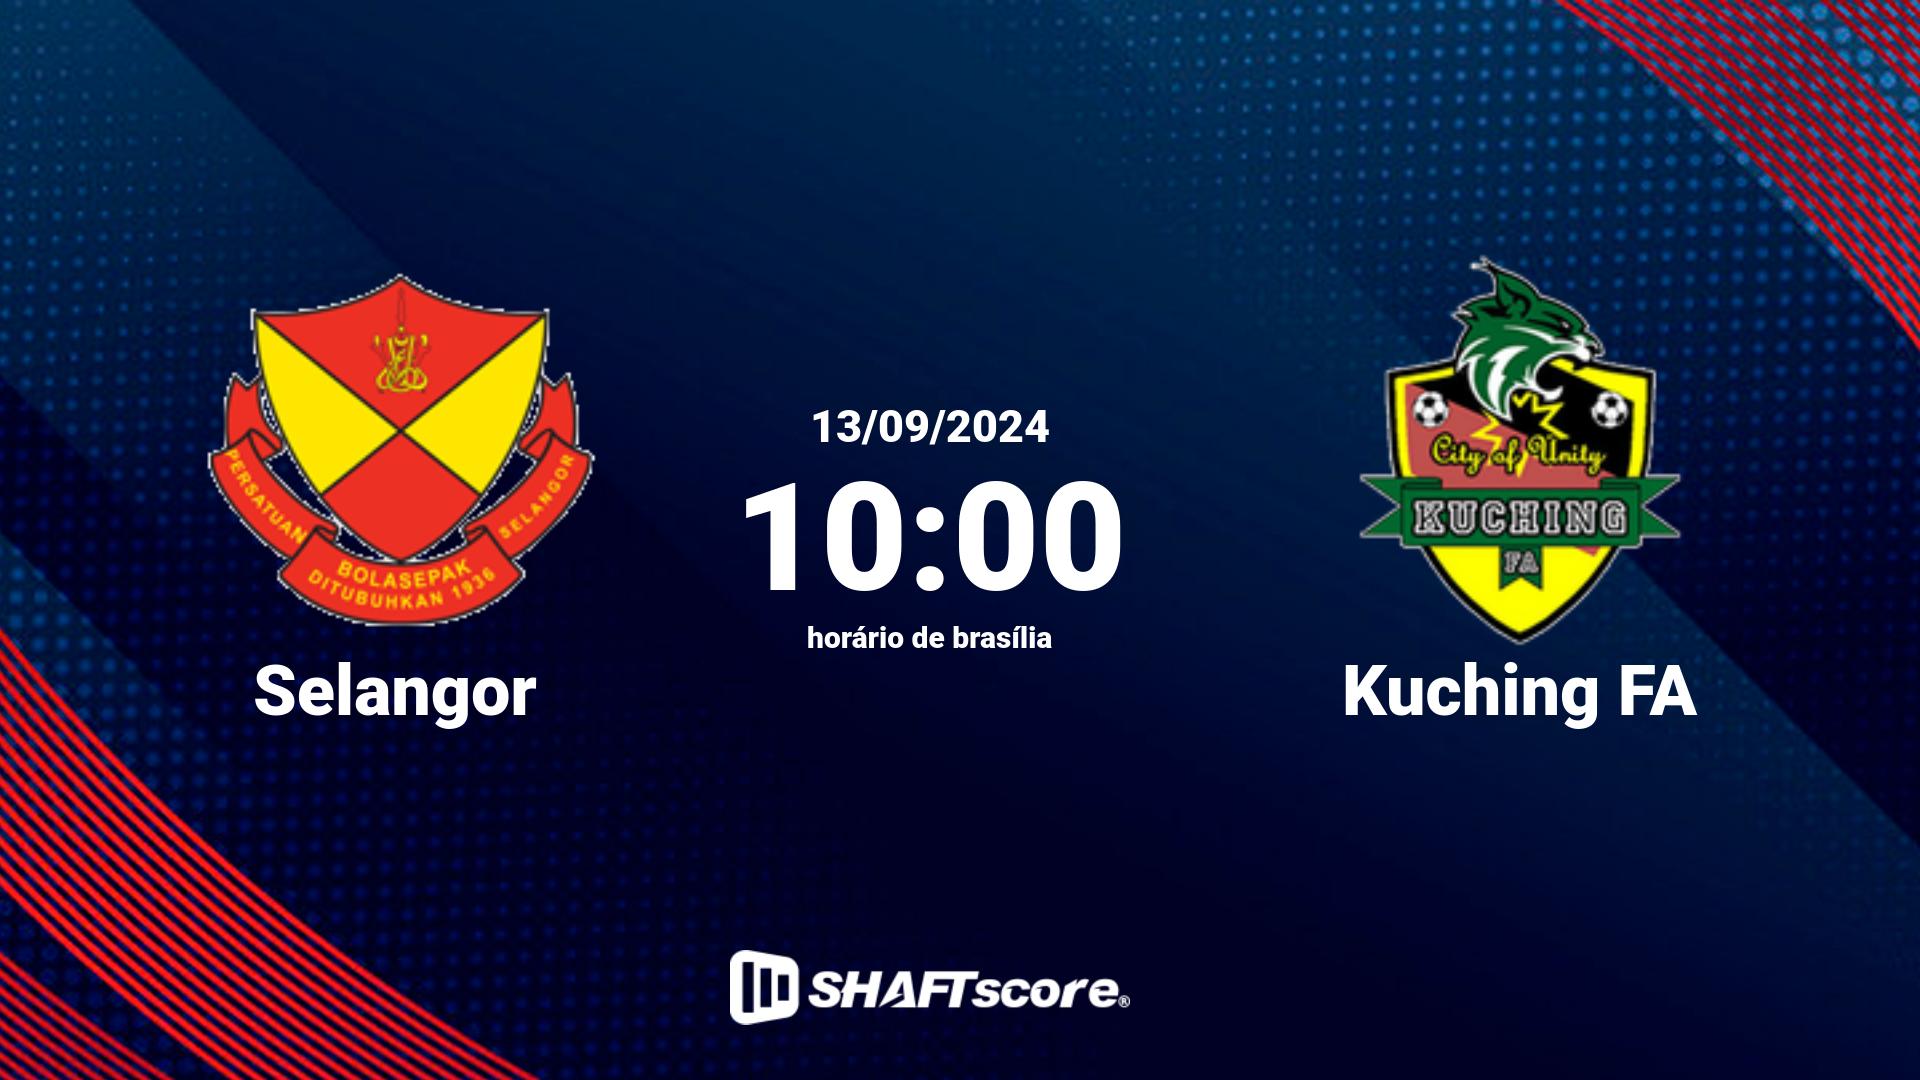 Estatísticas do jogo Selangor vs Kuching FA 13.09 10:00